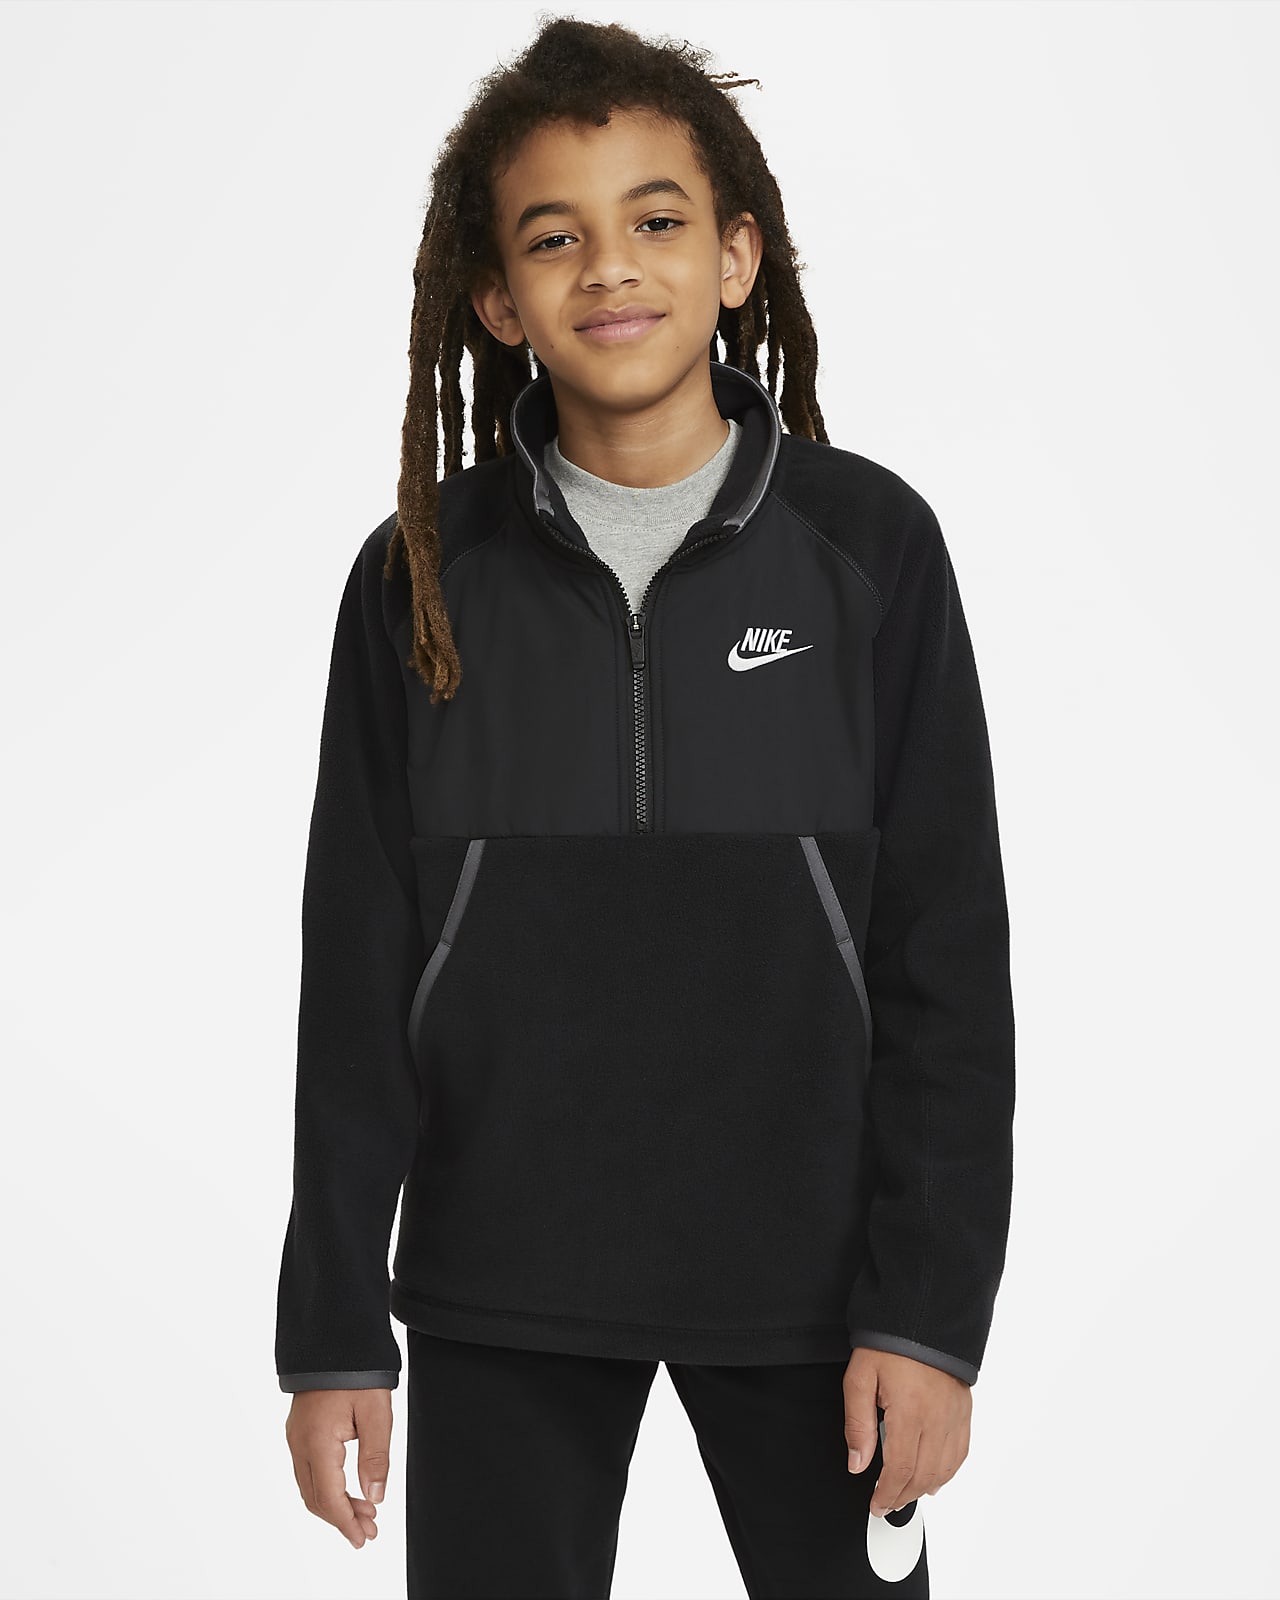 Nike Sportswear Older Kids' (Boys') 1/2-Zip Winterized Top